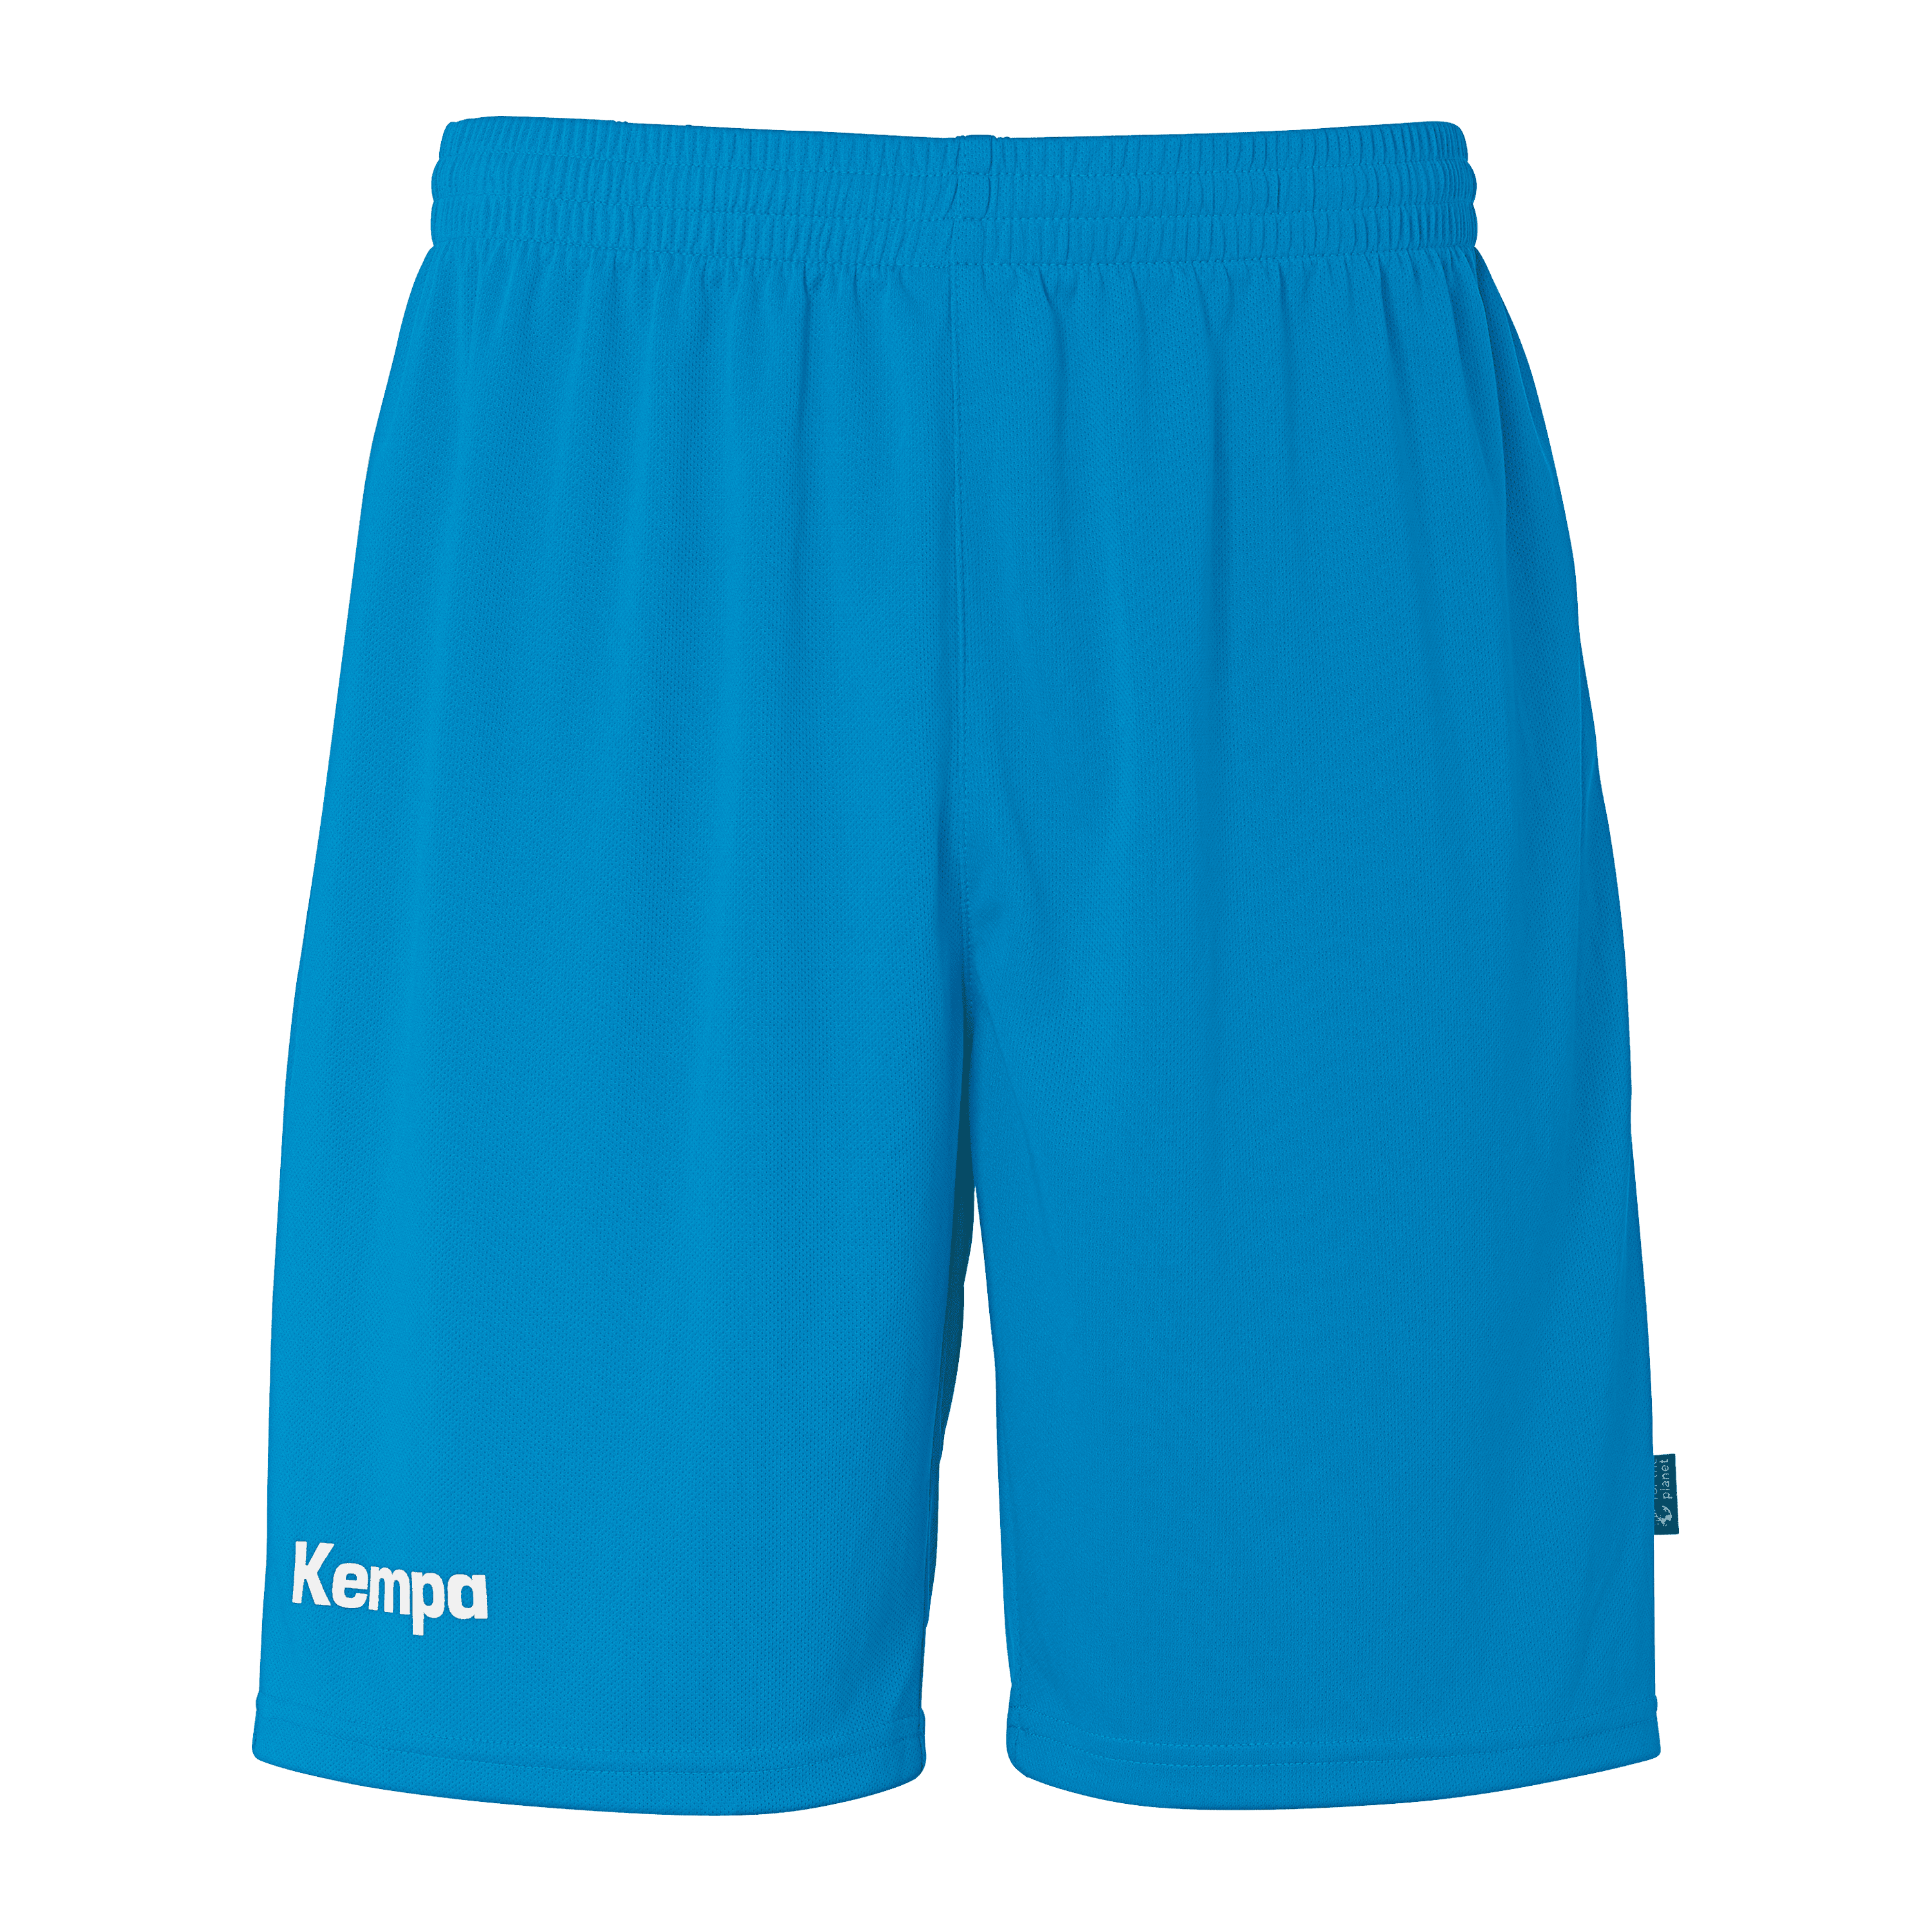 Kempa Team Shorts kempablau